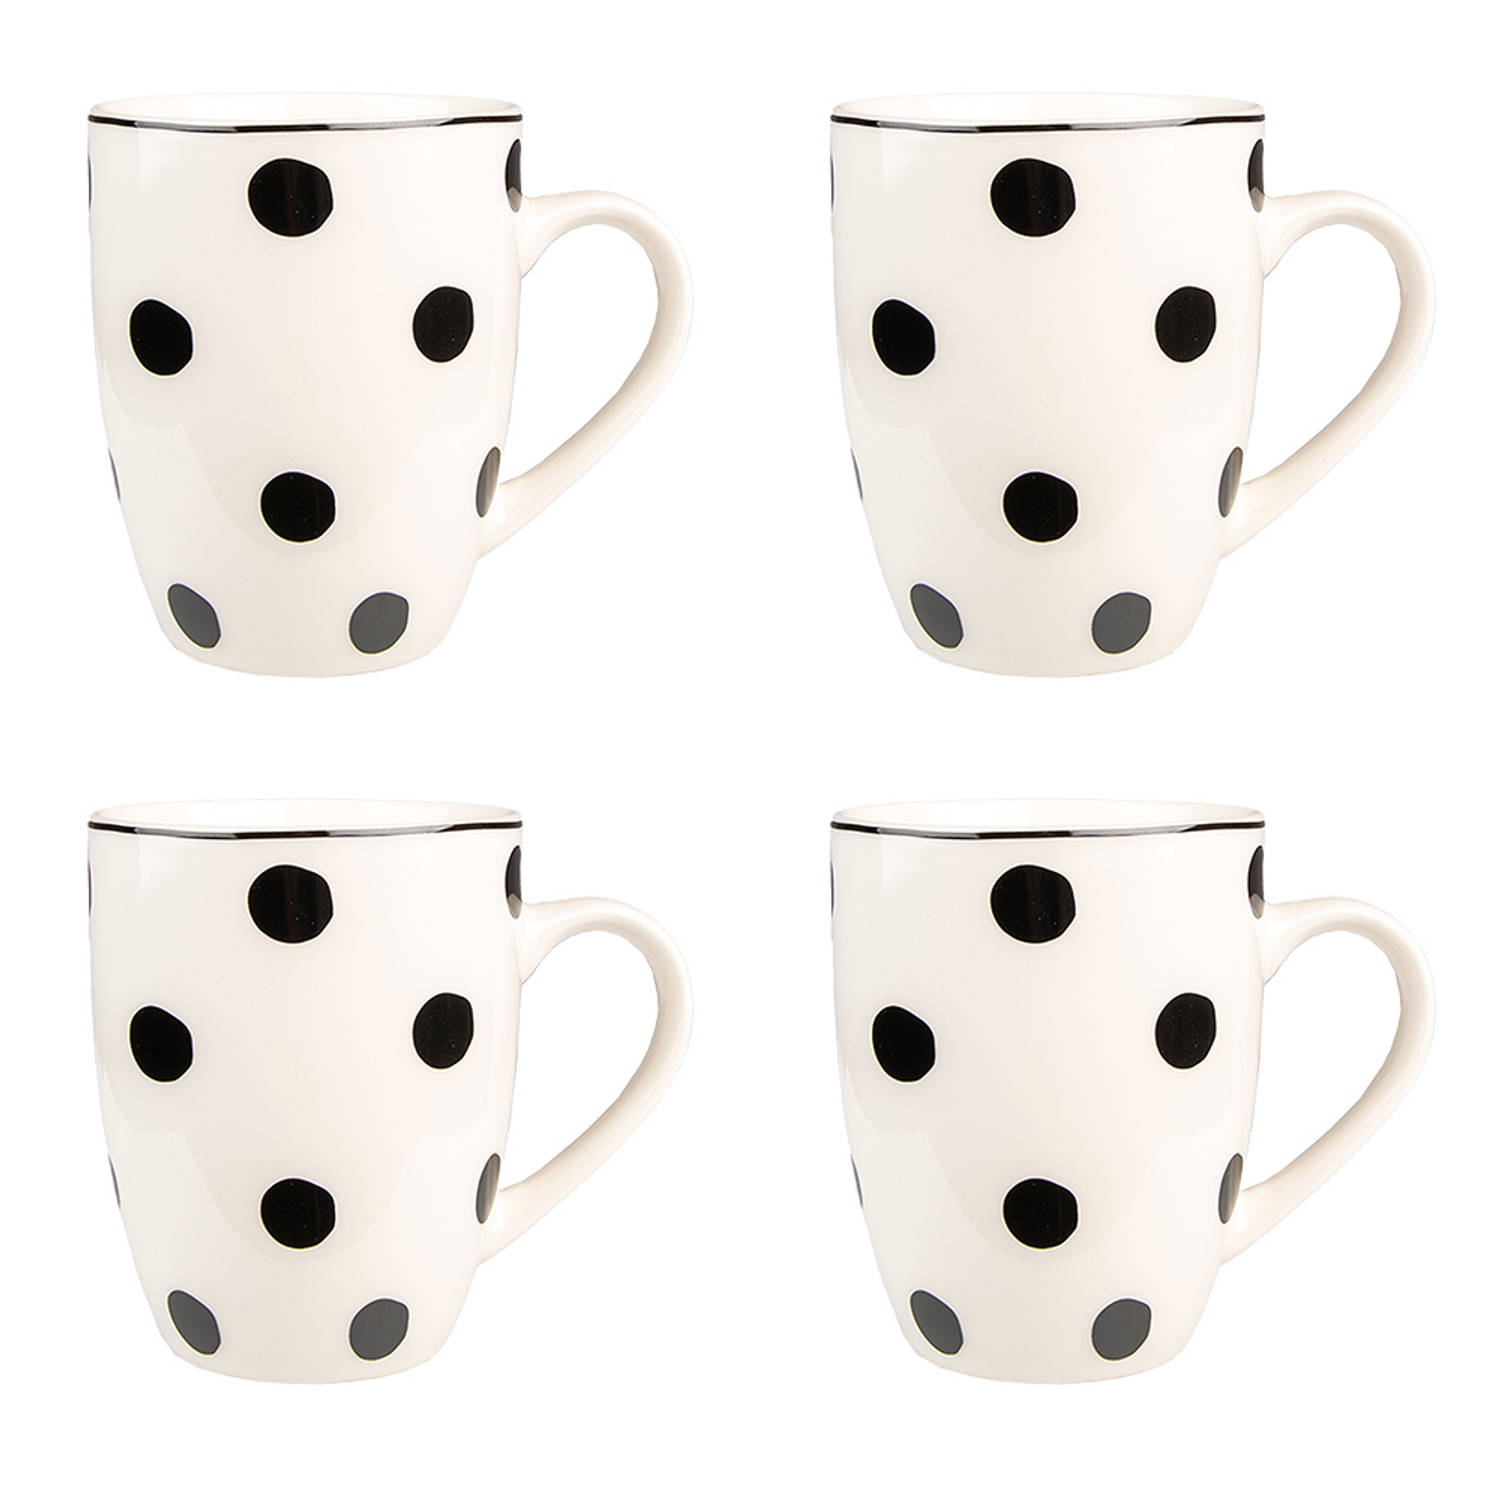 HAES DECO - Mokken set van 4 - formaat 12x8x10 cm / 350 ml - kleuren Wit / Zwart - Bedrukt met Zwarte Stippen - Collectie: Big Dots - Mokkenset, Koffiemok, Koffiebeker